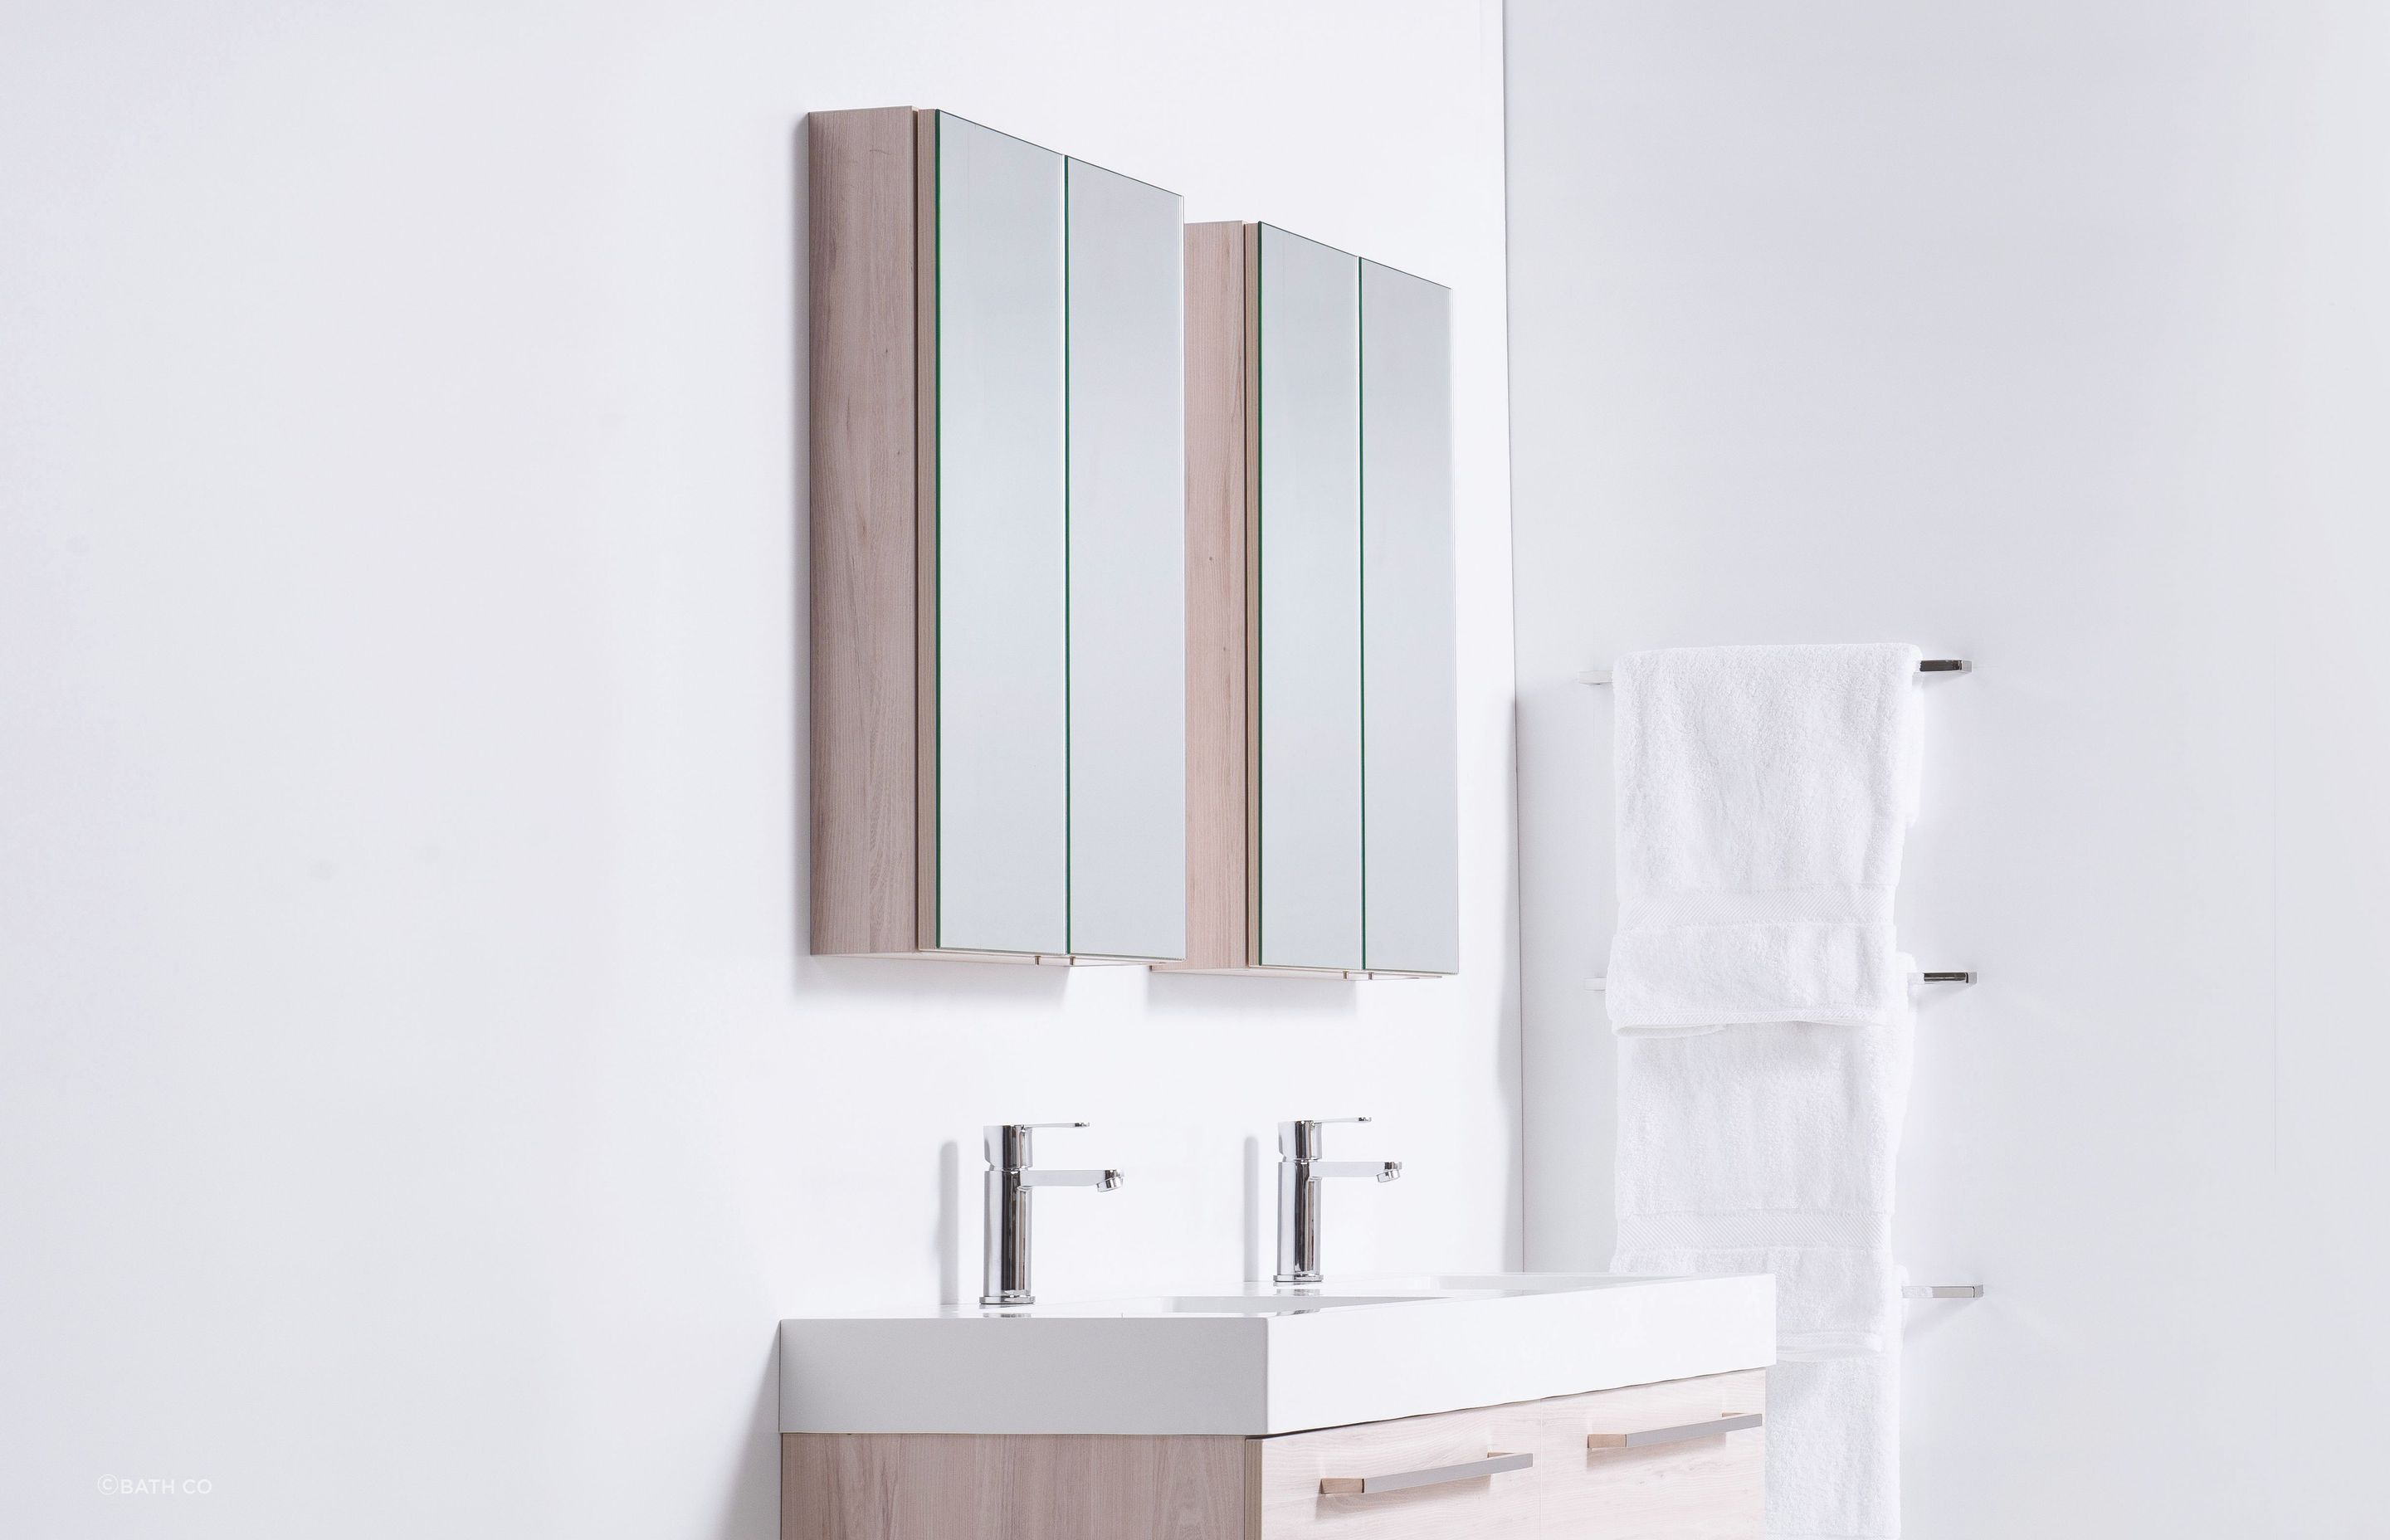 https://archipro.co.nz/images/cdn-images/width=3840,quality=80/images/s1/article/kitchen-and-bathroom/Bathroom-Mirror-Cabinets.jpg/eyJlZGl0cyI6W3sidHlwZSI6InpwY2YiLCJvcHRpb25zIjp7ImJveFdpZHRoIjoyODgwLCJib3hIZWlnaHQiOjE4NTYsIndhdGVybWFyayI6eyJ0ZXh0IjoiQmF0aCBDbyIsImZvbnRTaXplIjoyNH0sImNvdmVyIjp0cnVlLCJ6b29tV2lkdGgiOjI4ODAsInNjcm9sbFBvc1giOjUwLCJzY3JvbGxQb3NZIjo1MCwiYmFja2dyb3VuZCI6InJnYigyMjMsMjI0LDIyOSkiLCJmaWx0ZXIiOjB9fSx7InR5cGUiOiJmbGF0dGVuIiwib3B0aW9ucyI6eyJiYWNrZ3JvdW5kIjoiI2ZmZmZmZiJ9fV0sInF1YWxpdHkiOjg3LCJ0b0Zvcm1hdCI6ImpwZyJ9